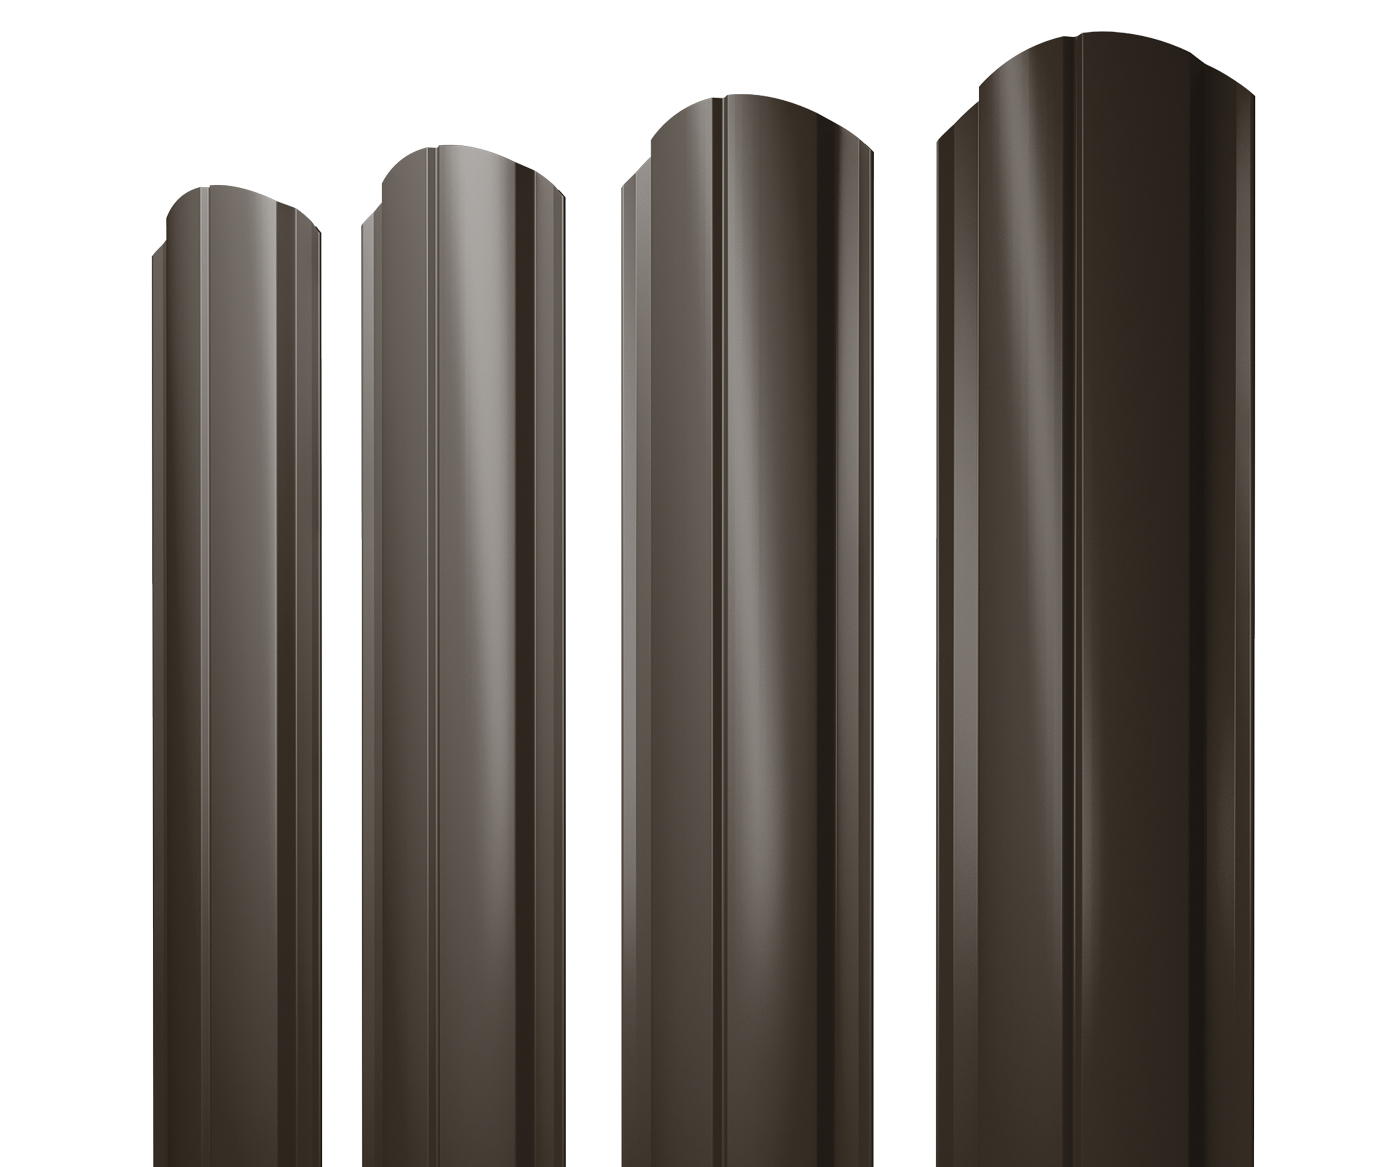 Штакетник Полукруглый Slim фигурный 0,5 GreenCoat Pural BT, matt RR 32 темно-коричневый (RAL 8019 серо-коричневый)